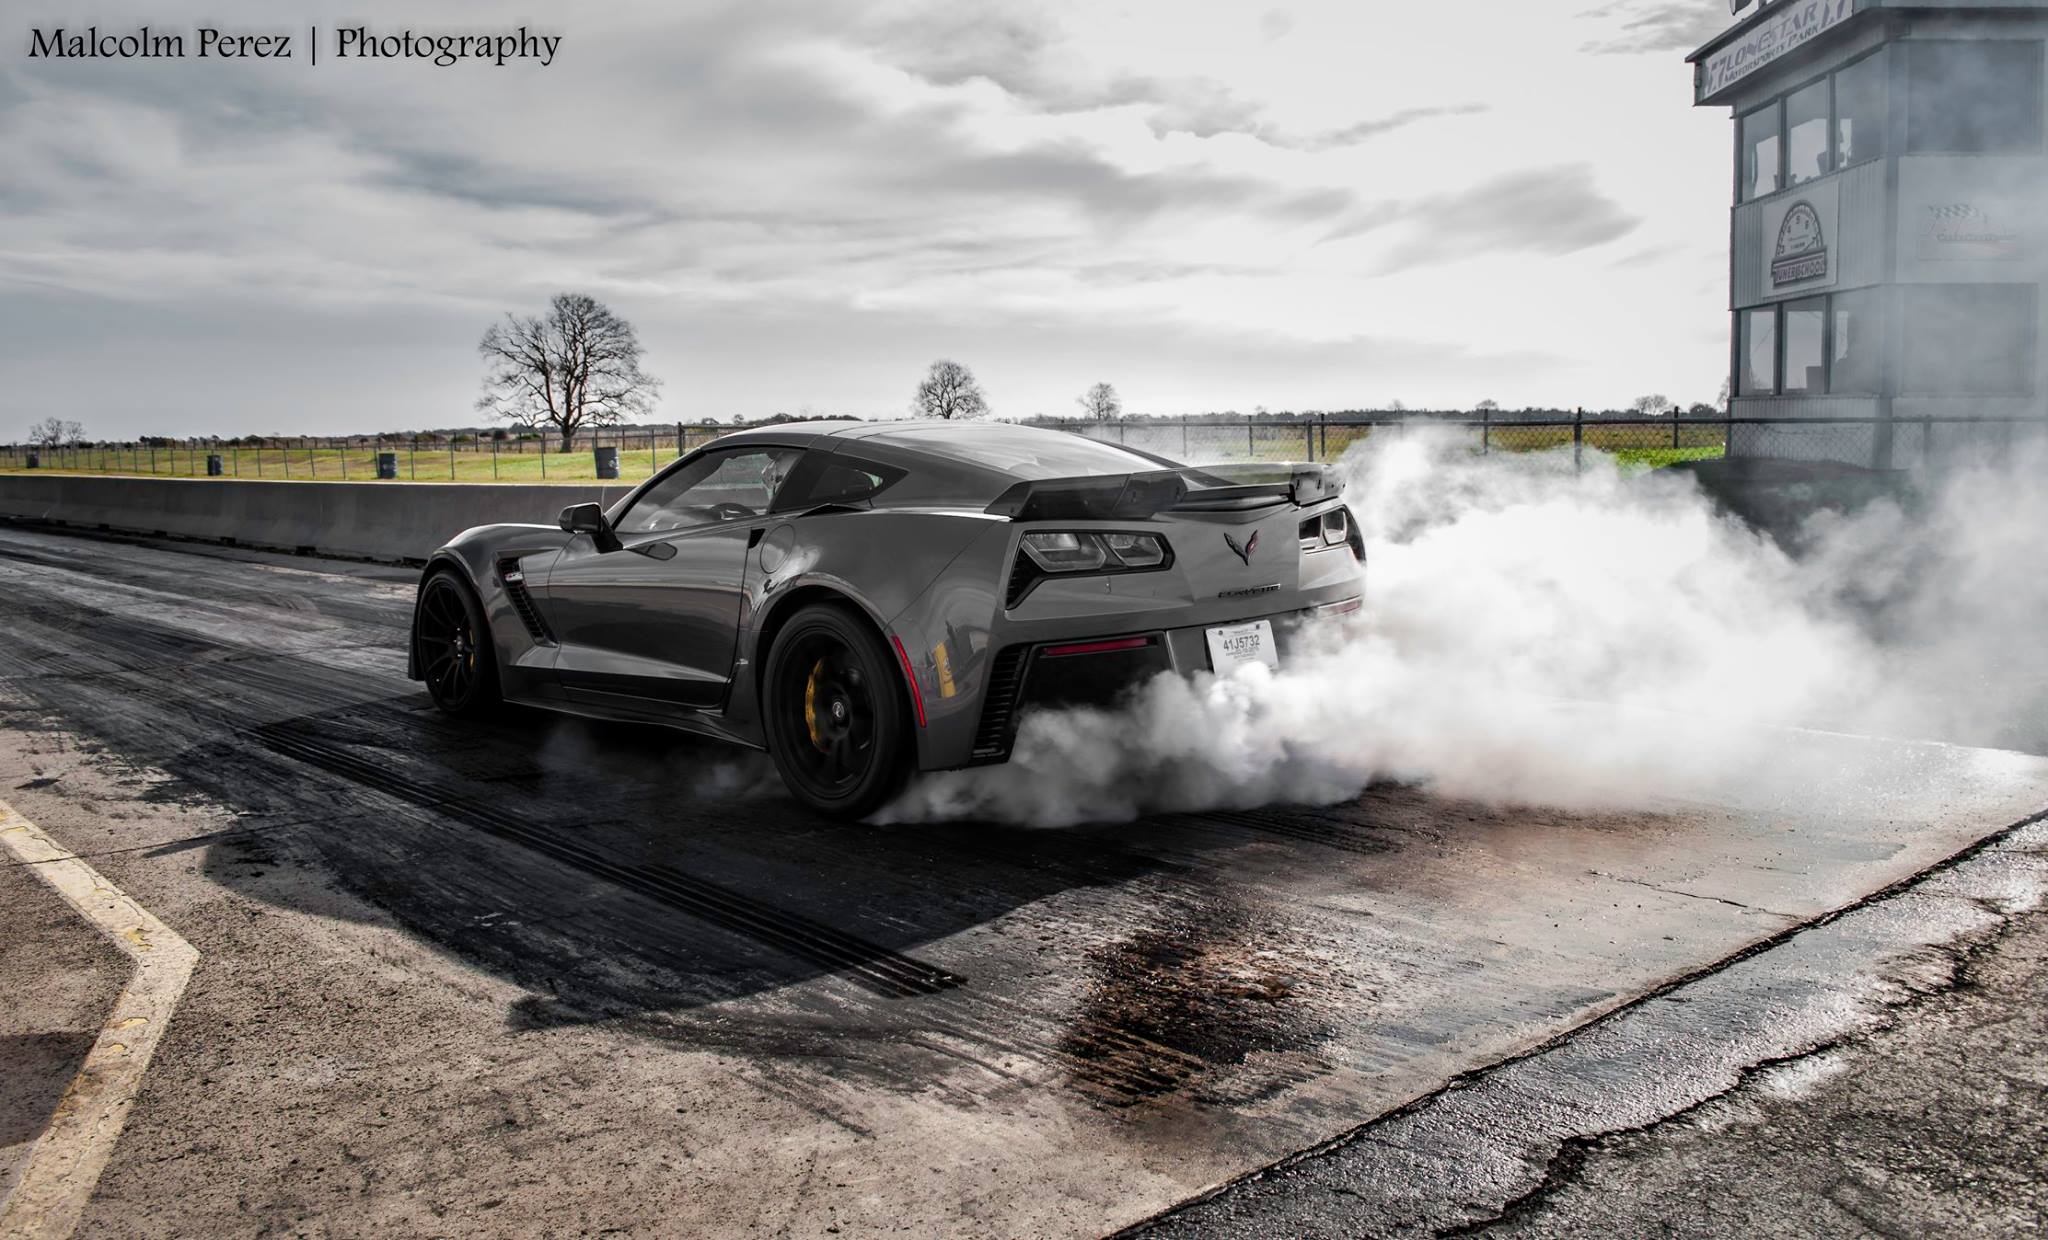 Corvette Burnout Wallpapers - Top Free Corvette Burnout Backgrounds ...